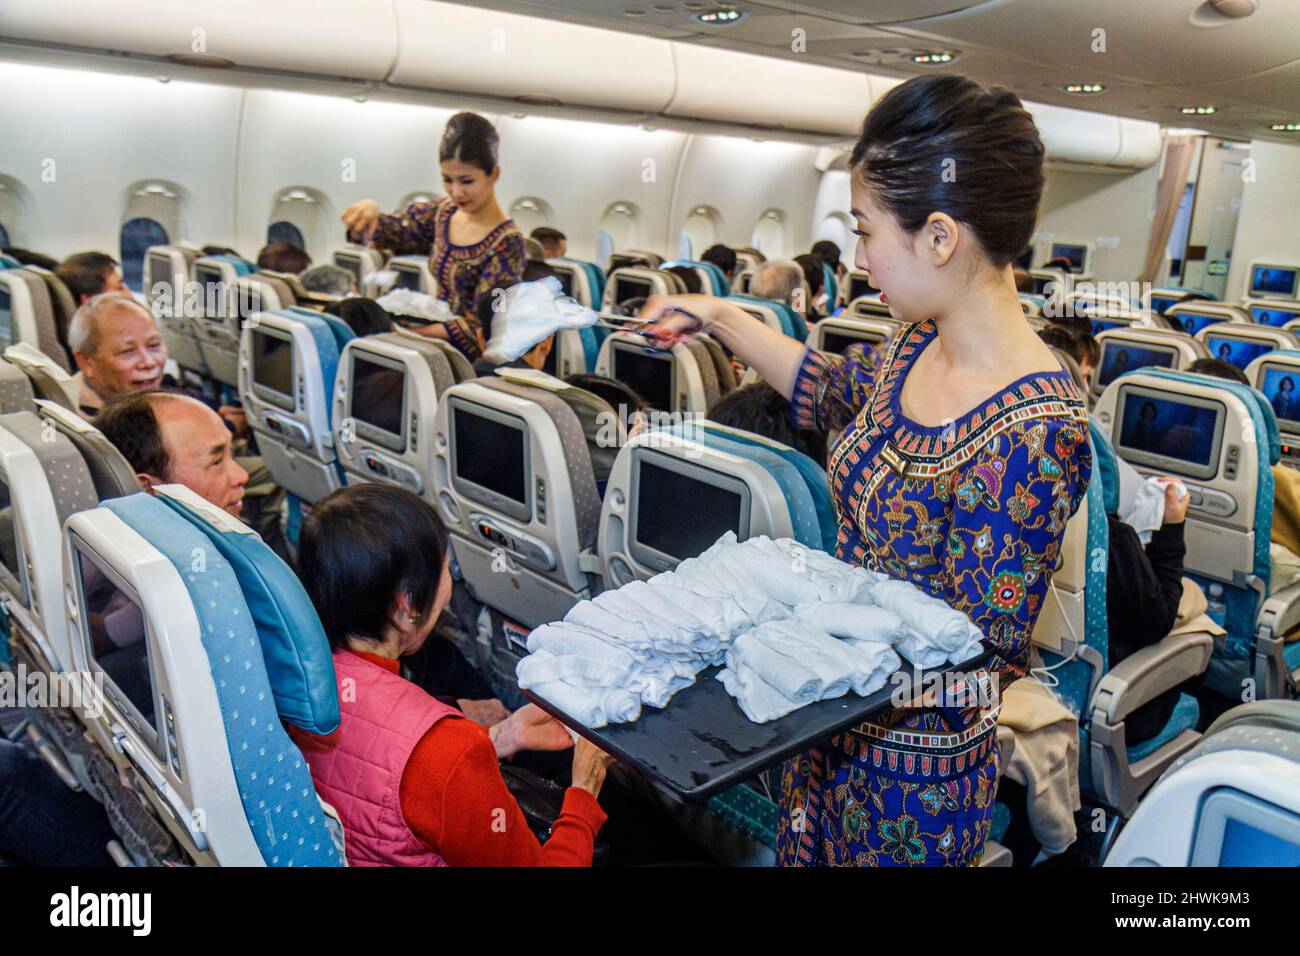 San Francisco, Kalifornien, Internationaler Flughafen, Abflug von Singapore Airlines, weibliche asiatische Flugbegleiterinnen, die Fluggäste mit heißen Handtüchern bewirten Stockfoto